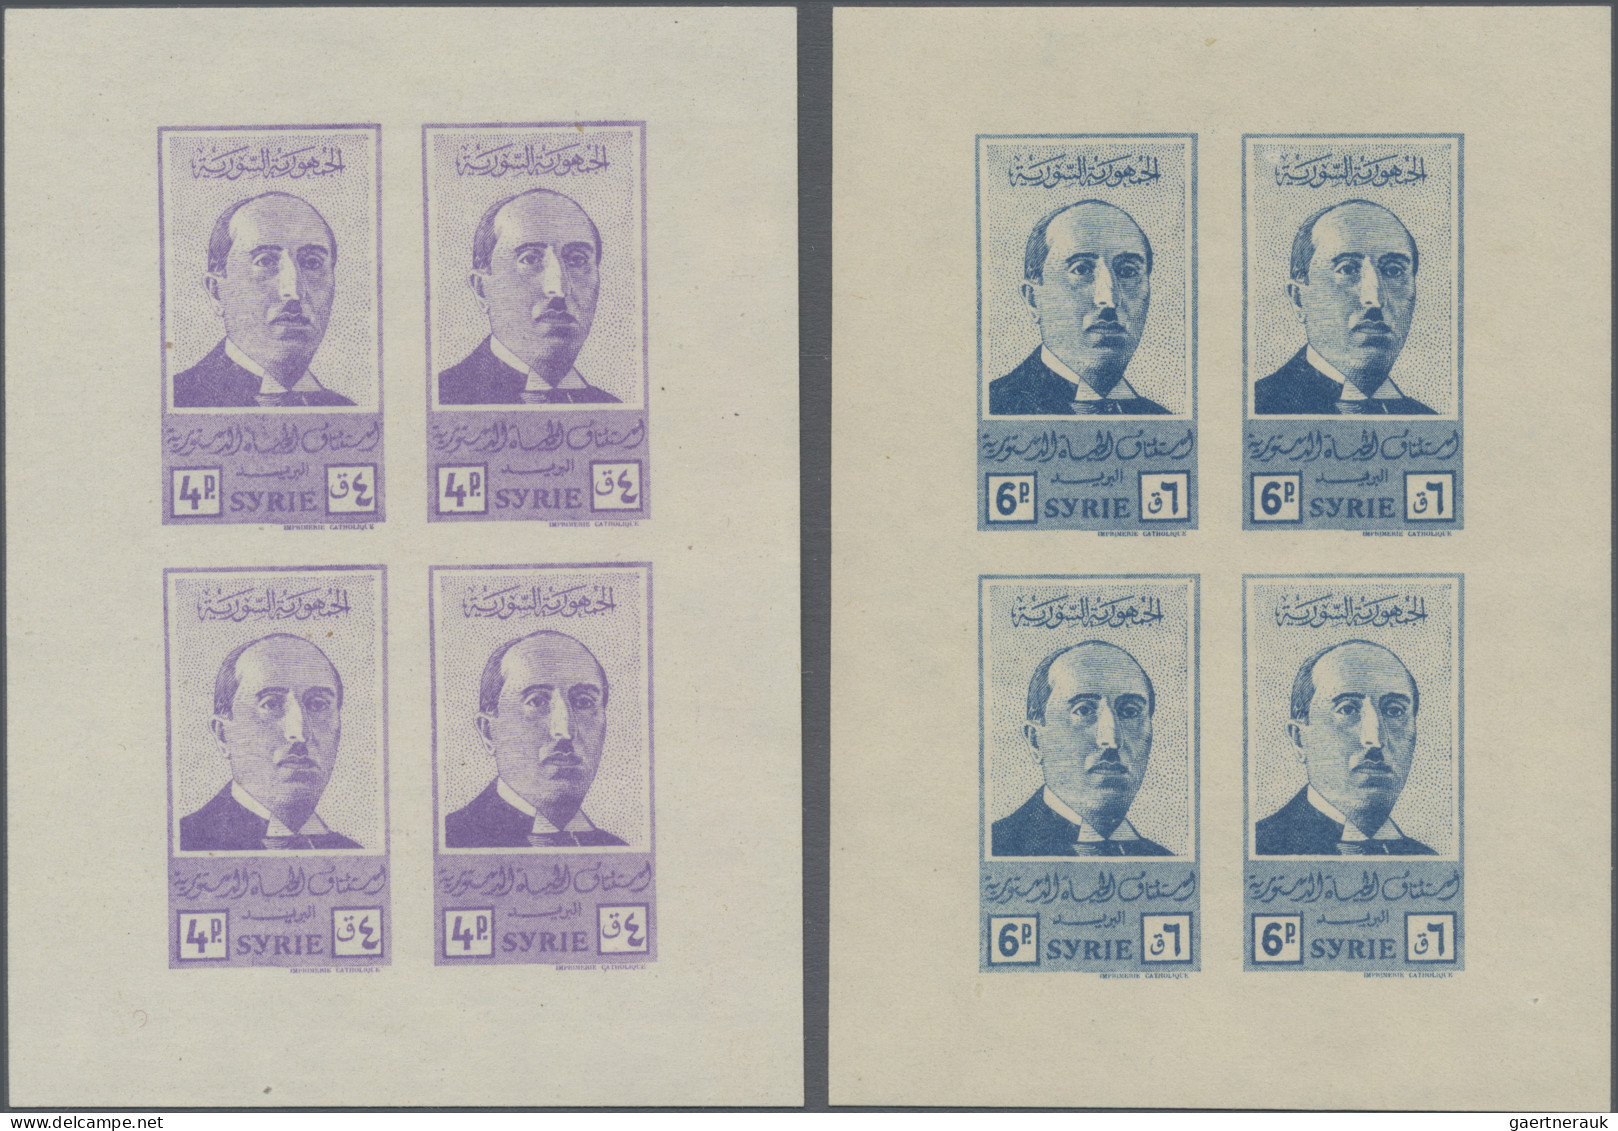 Syria: 1945, President, 4pi. To 200pi., Set Of 13 Mini Sheets Of Four Stamps Eac - Syria